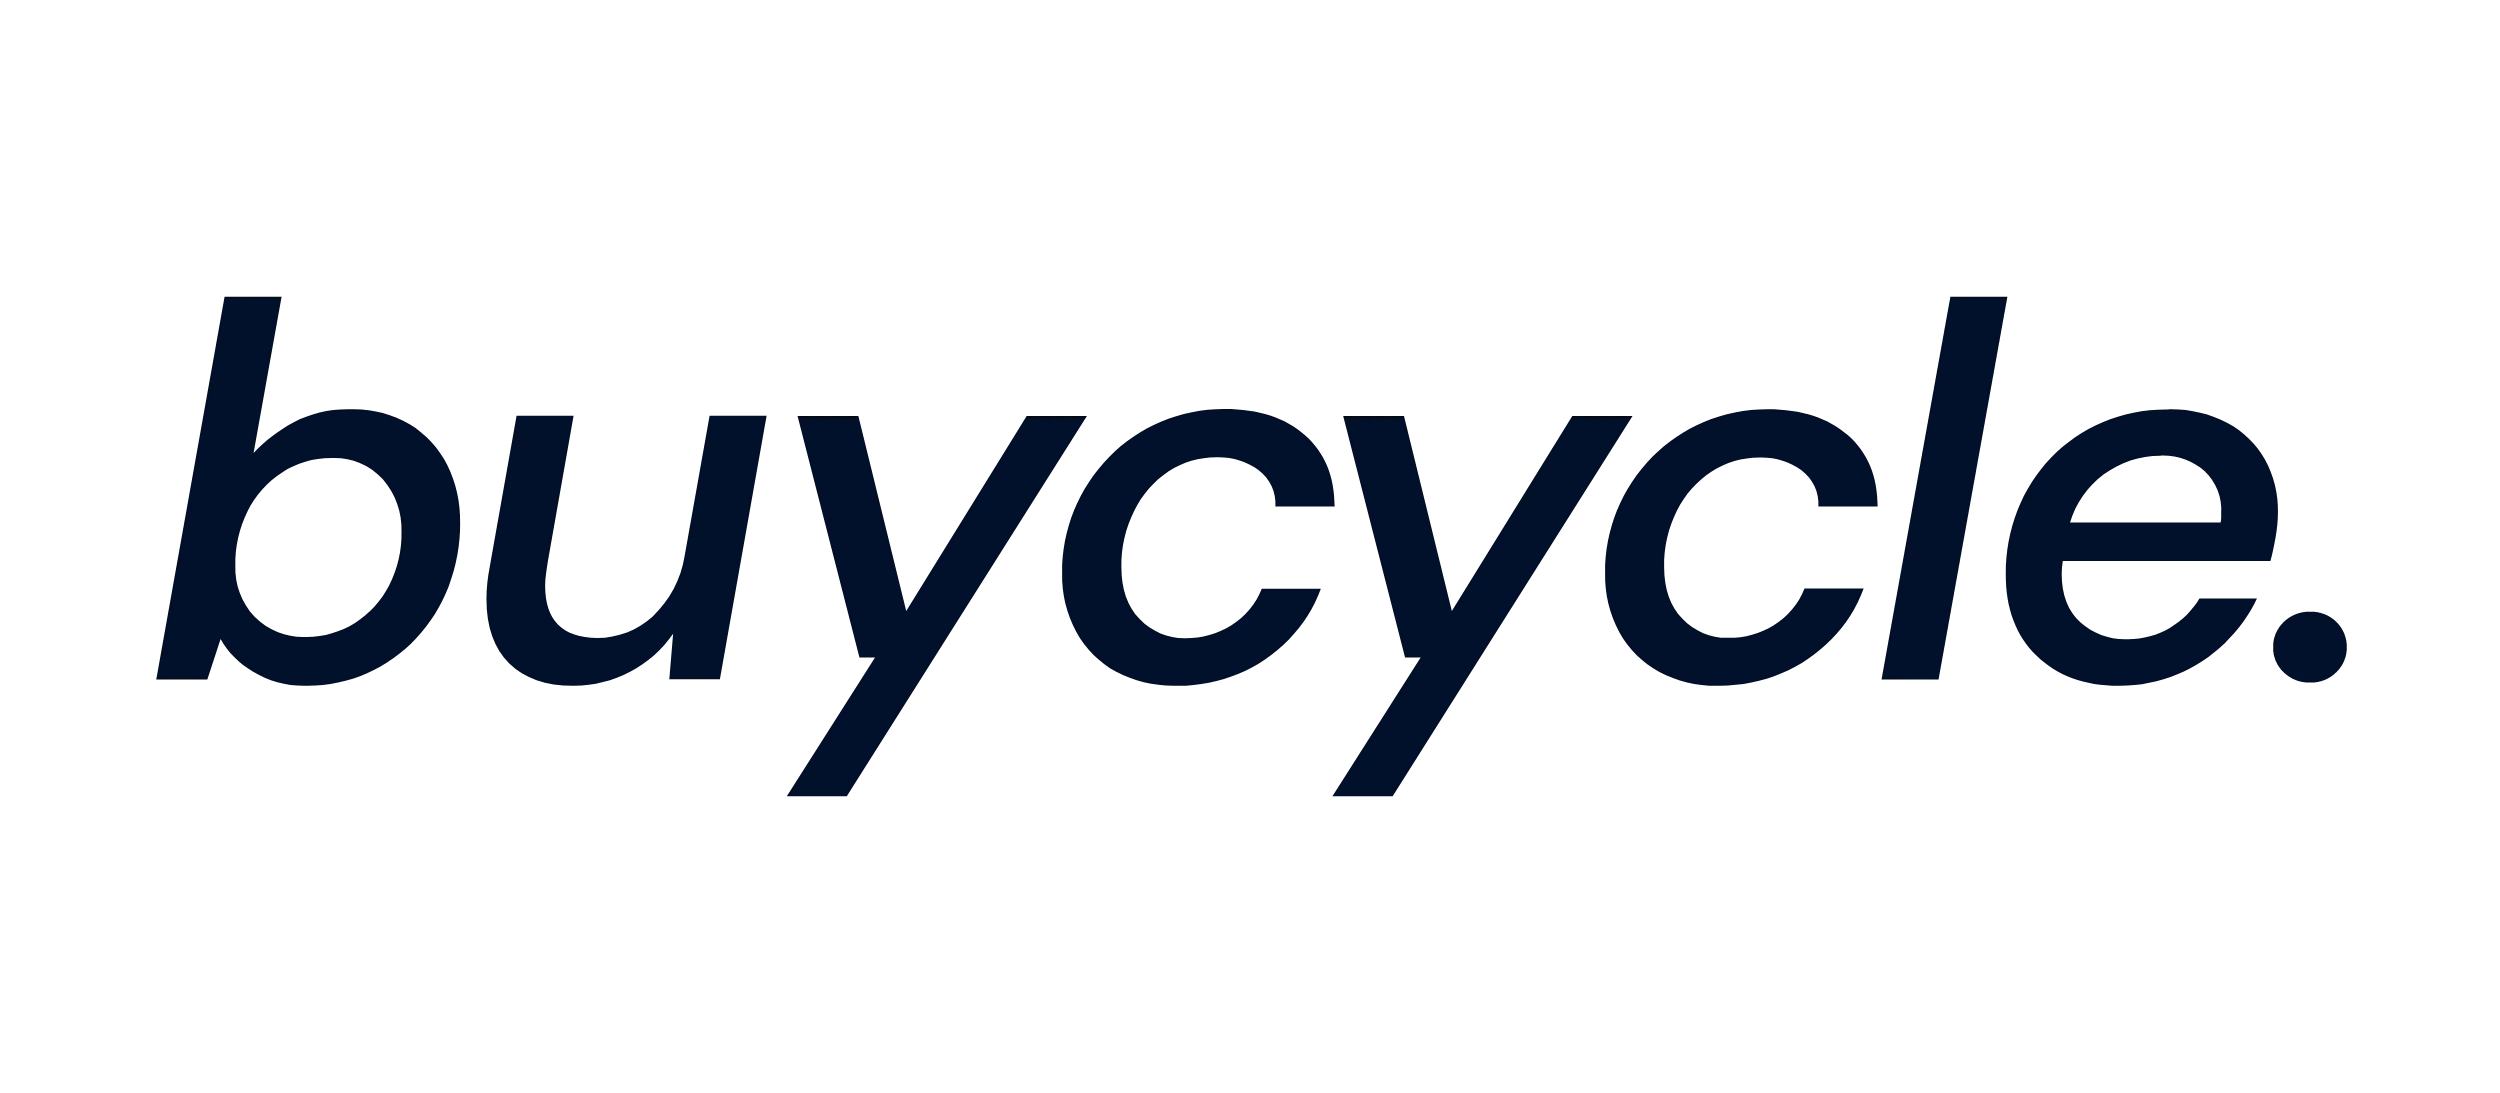 buycycle logo